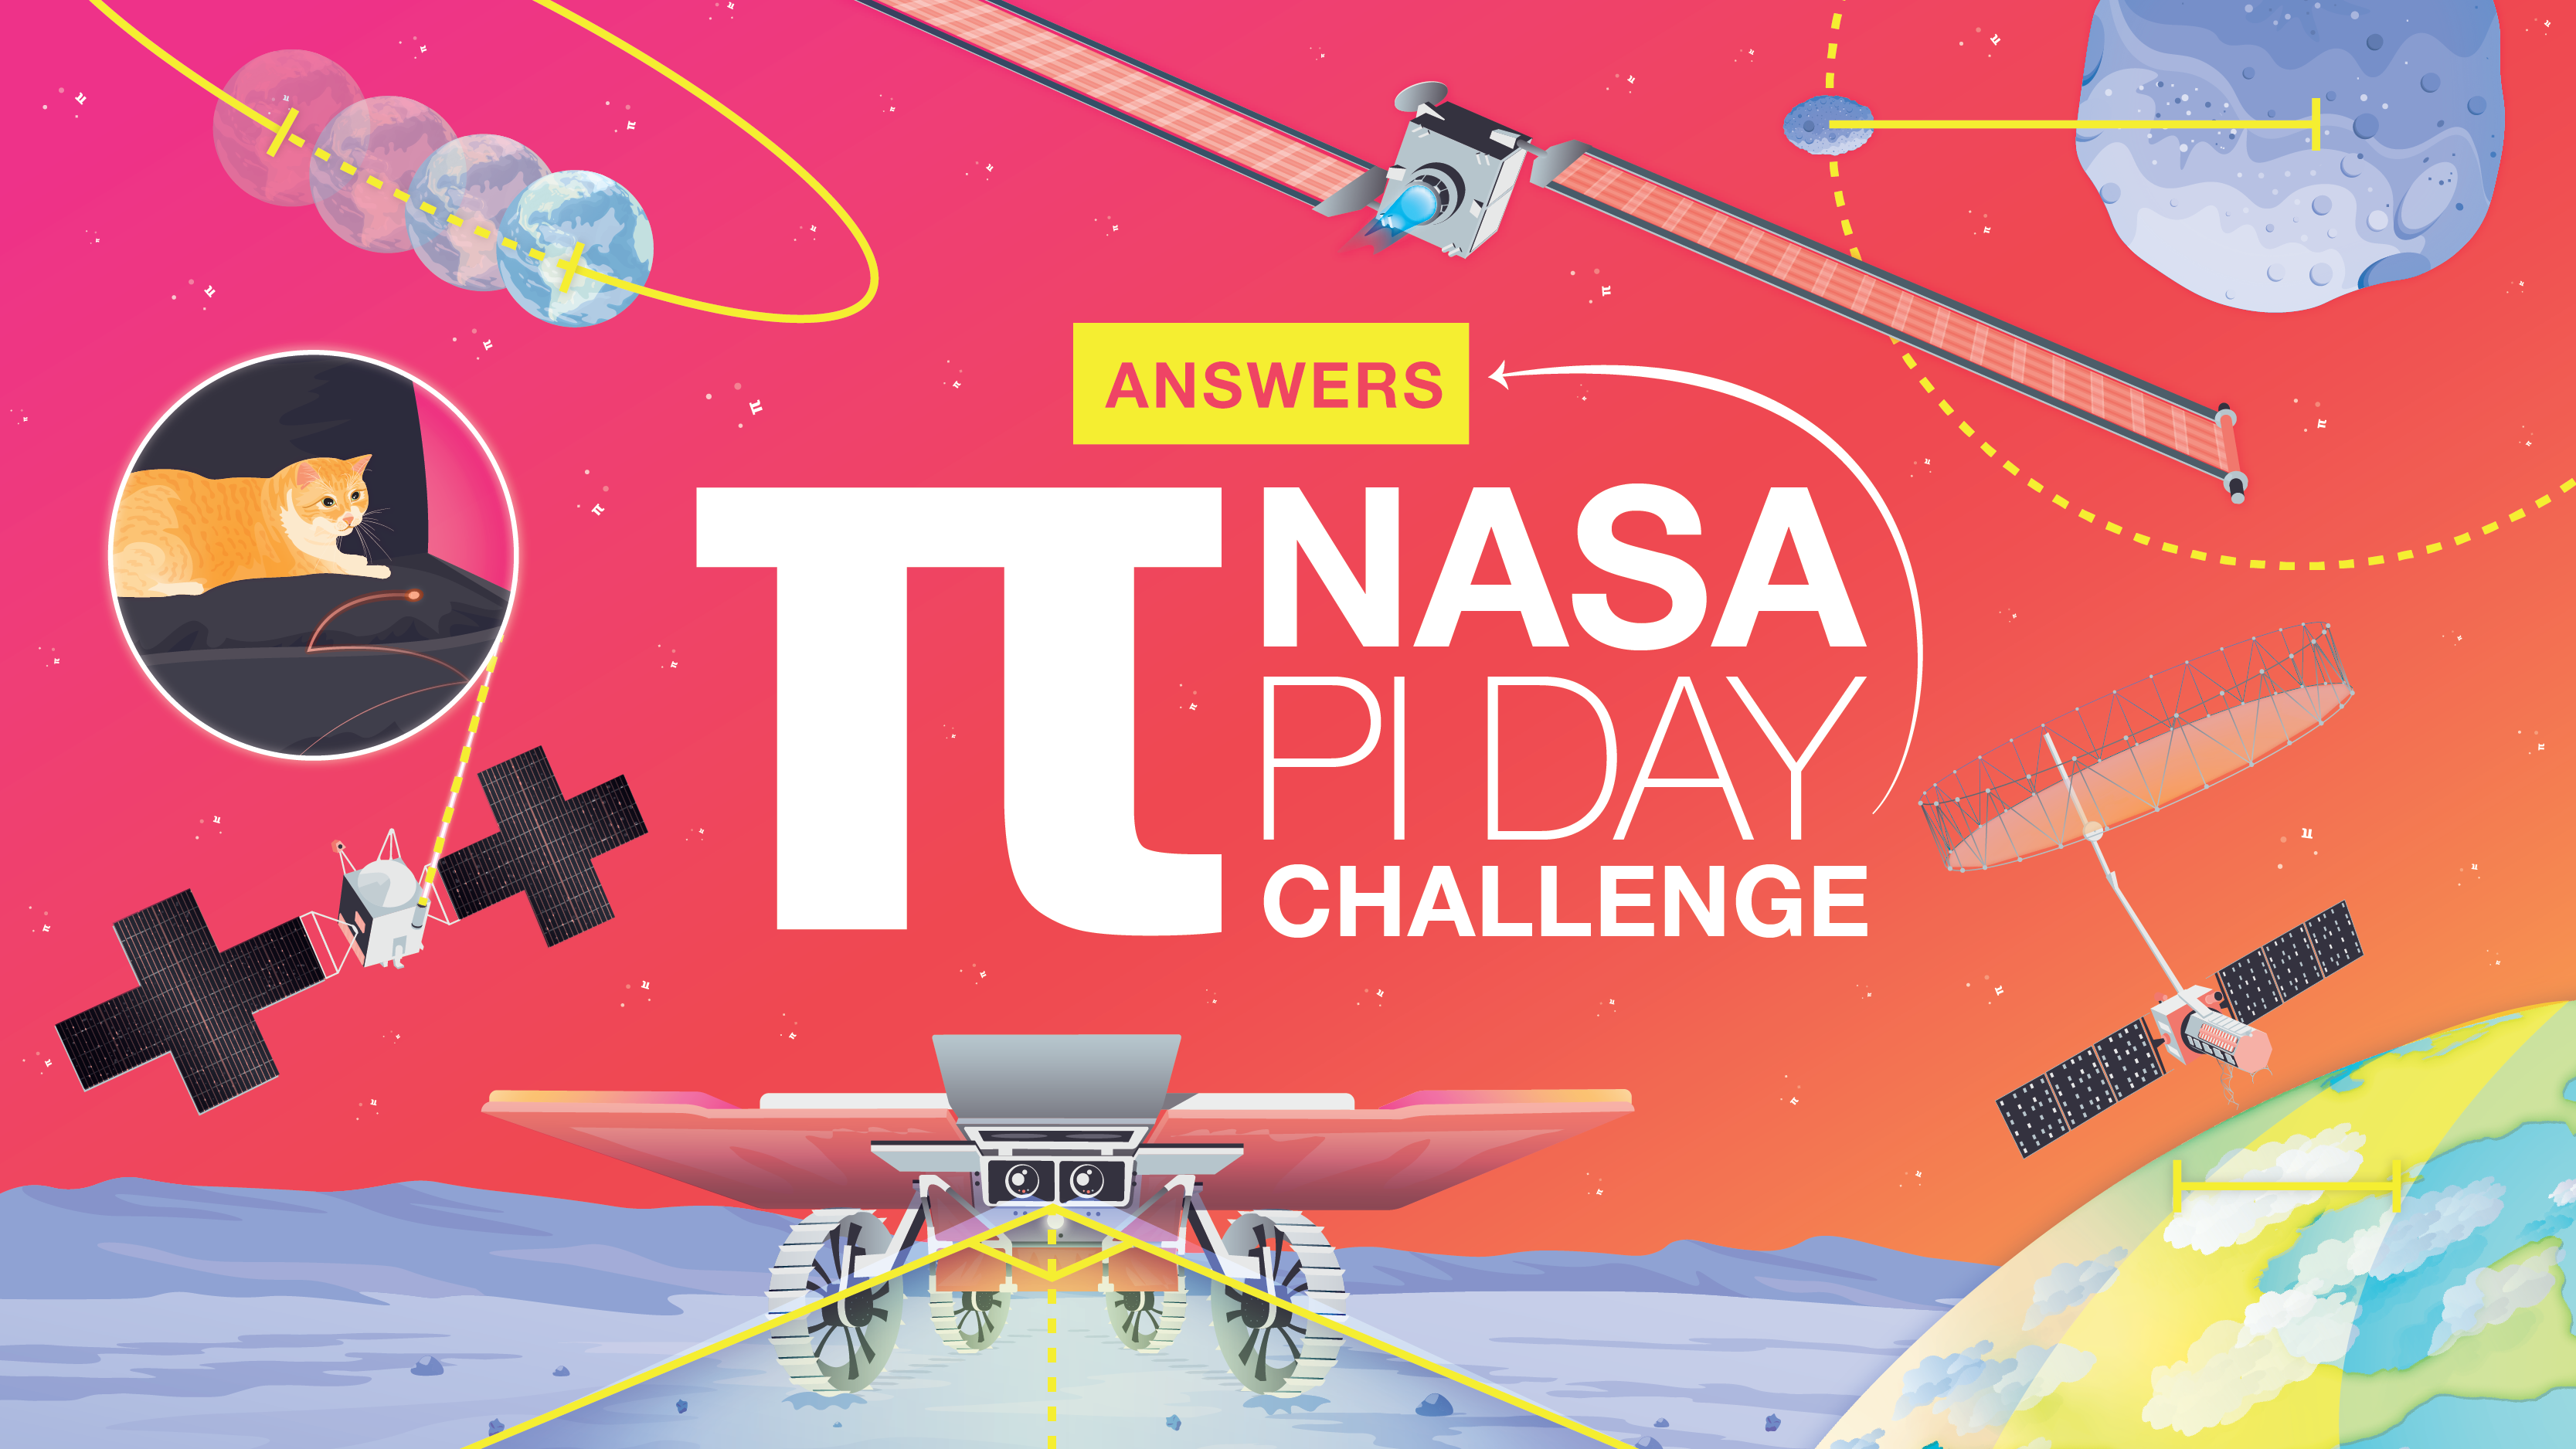 The NASA Pi Day Challenge